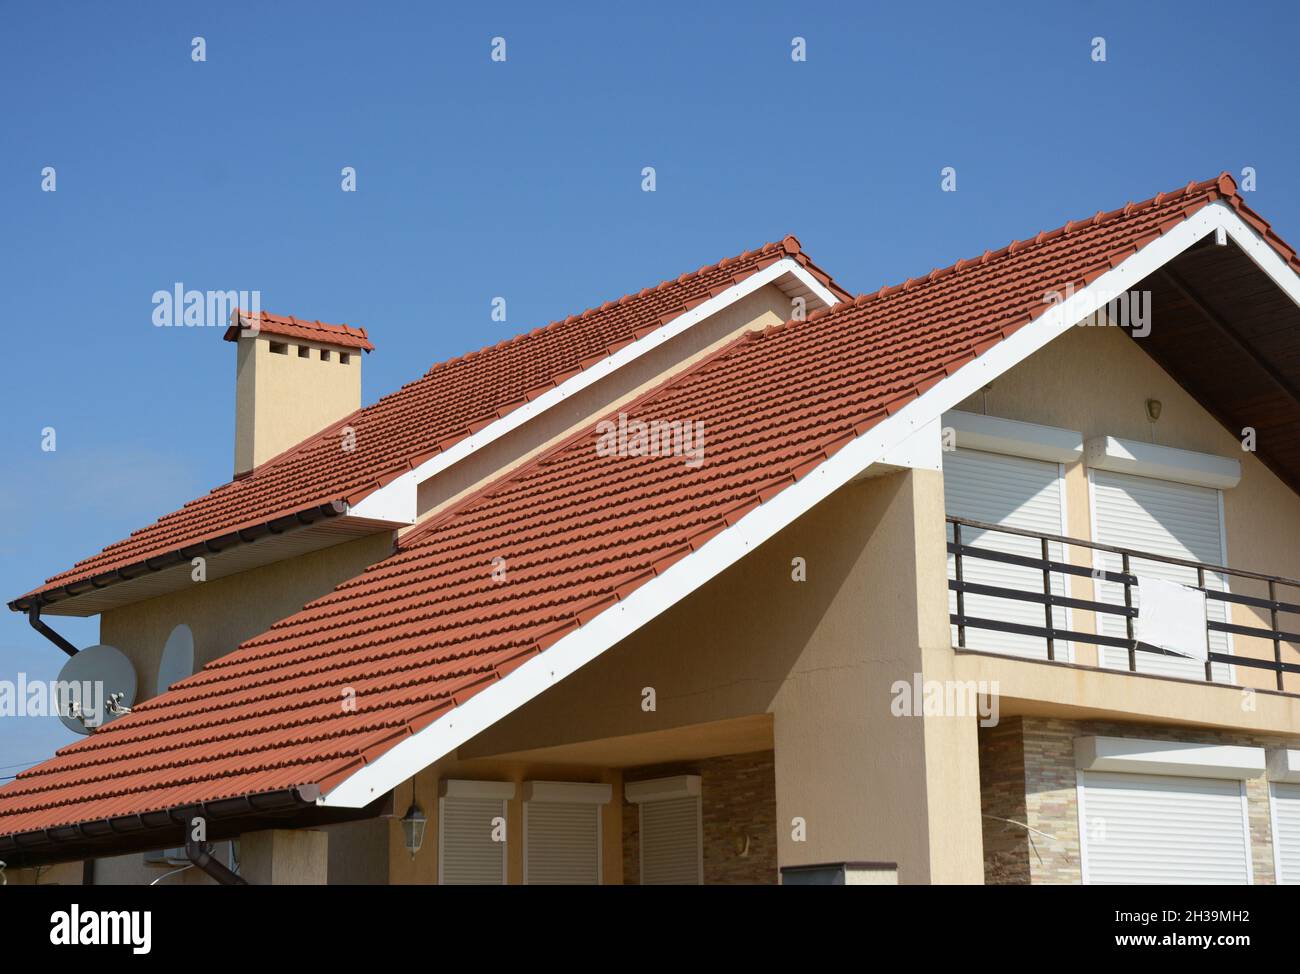 Gemütliches Haus mit Balkon, Lehm-Ziegeldach und Giebel und Tal Art der Dachkonstruktion. Gebäude Dachgeschosshausbau mit verschiedenen Arten von Roo Stockfoto